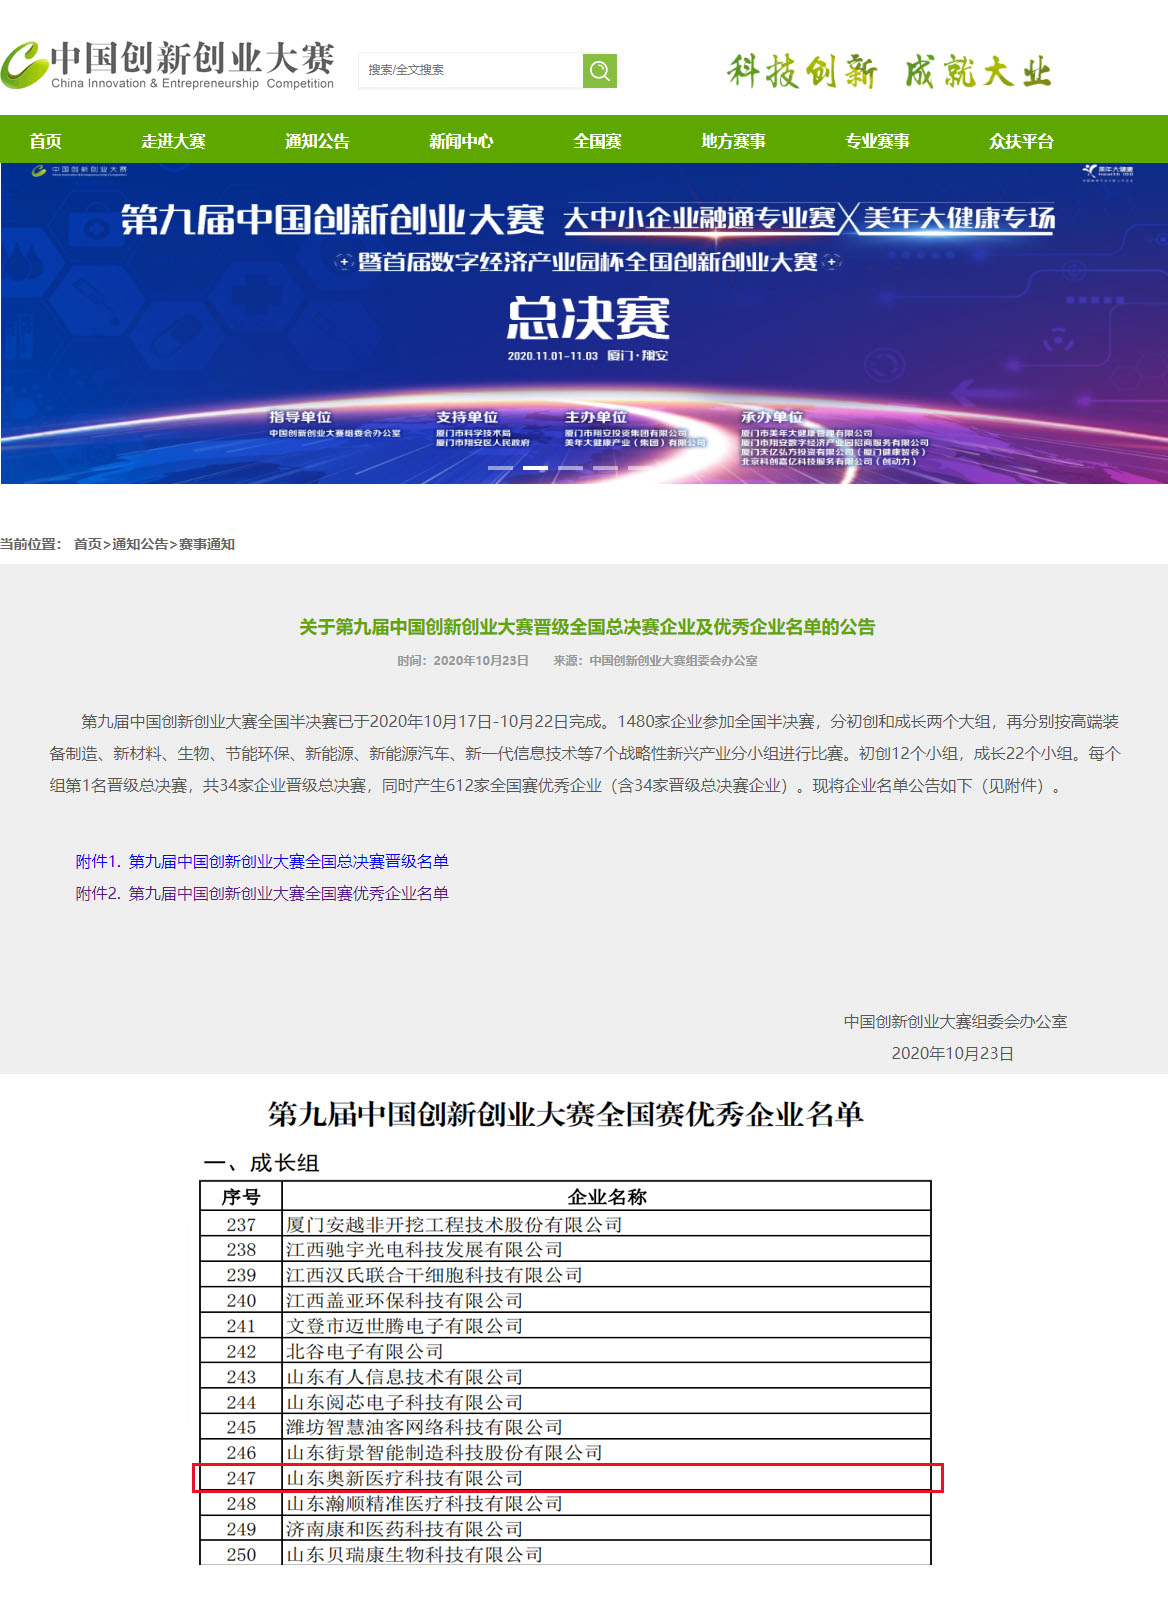 【喜报】3.0T 肢端磁共振整机系统项目荣获“第九届中国创新创业大赛（全国赛）优秀企业”称号